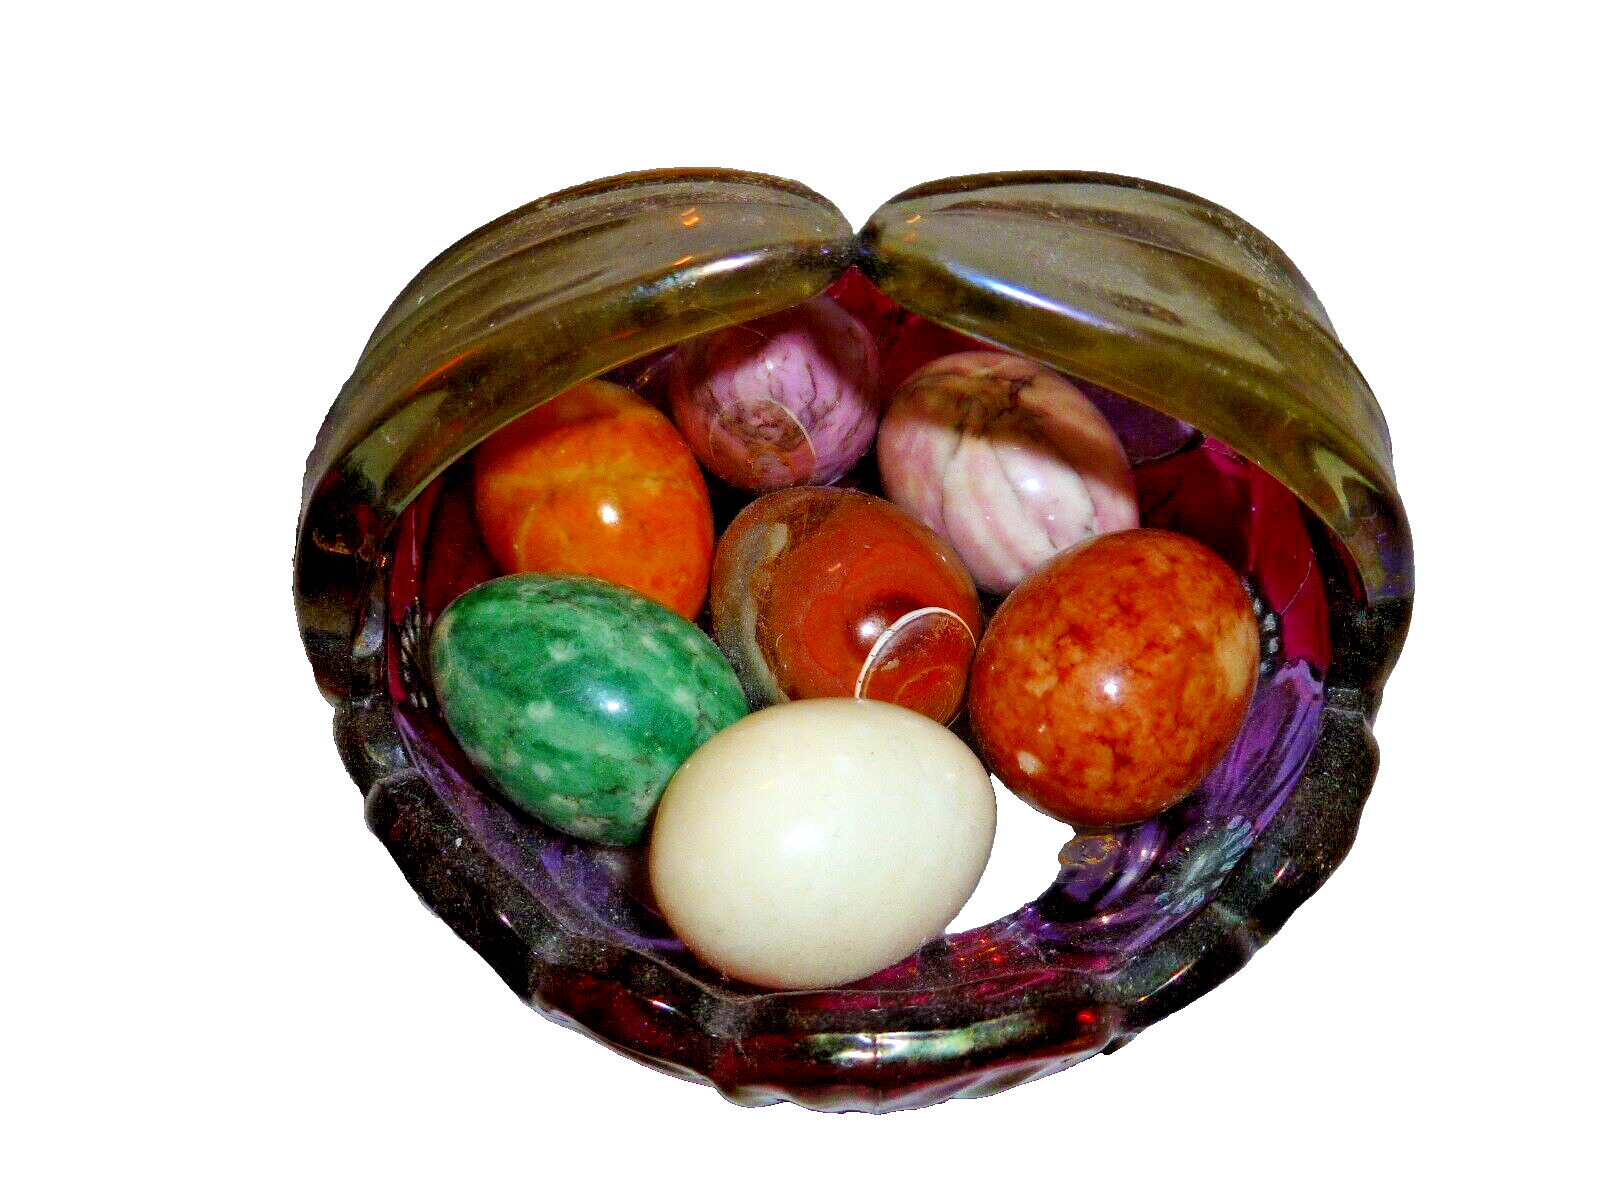 Polished Alabaster/Marble Eggs Vibrant Colors Set of 7 Vintage & Basket